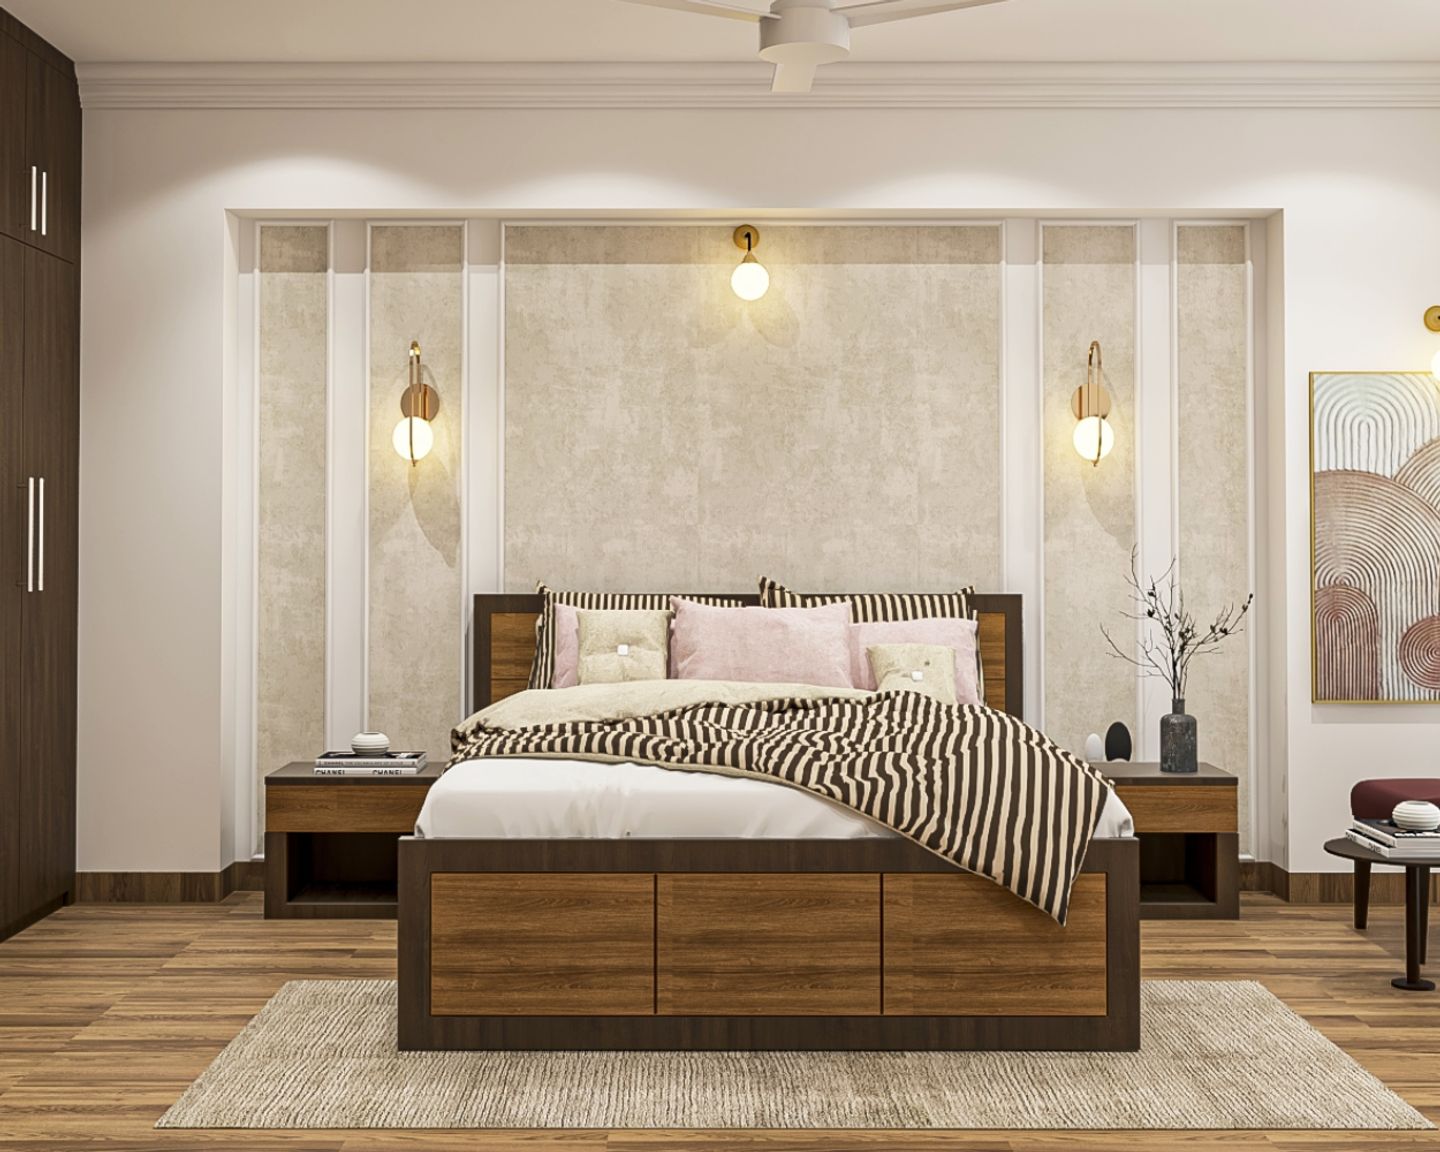 Beige Textured Bedroom Wallpaper Design - Livspace